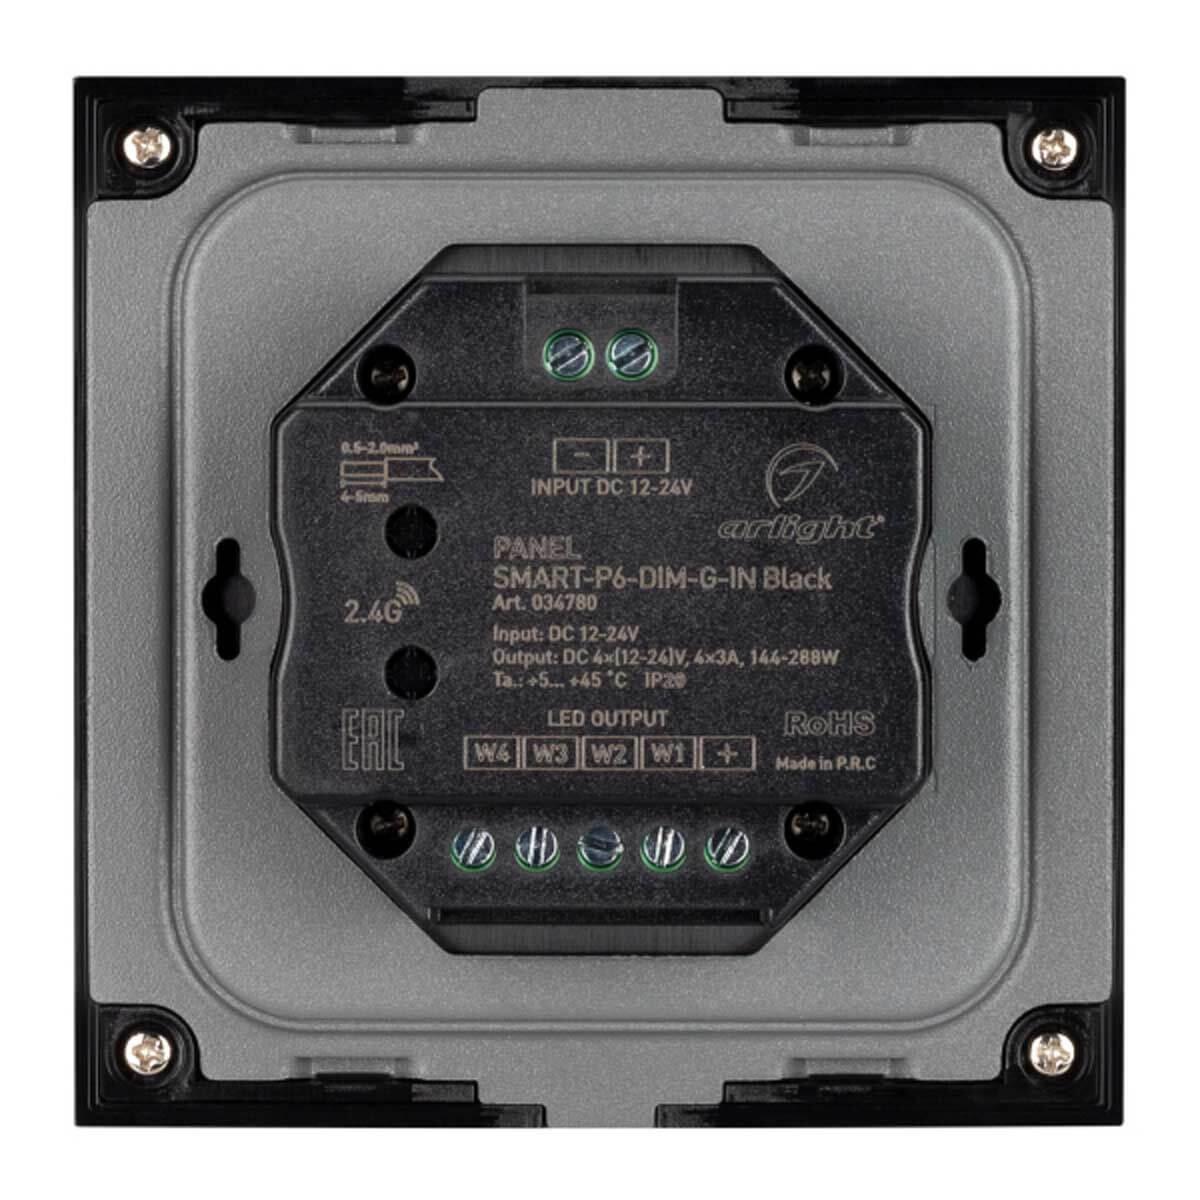 панель управления arlight smart-p6-dim-g-in black 034780